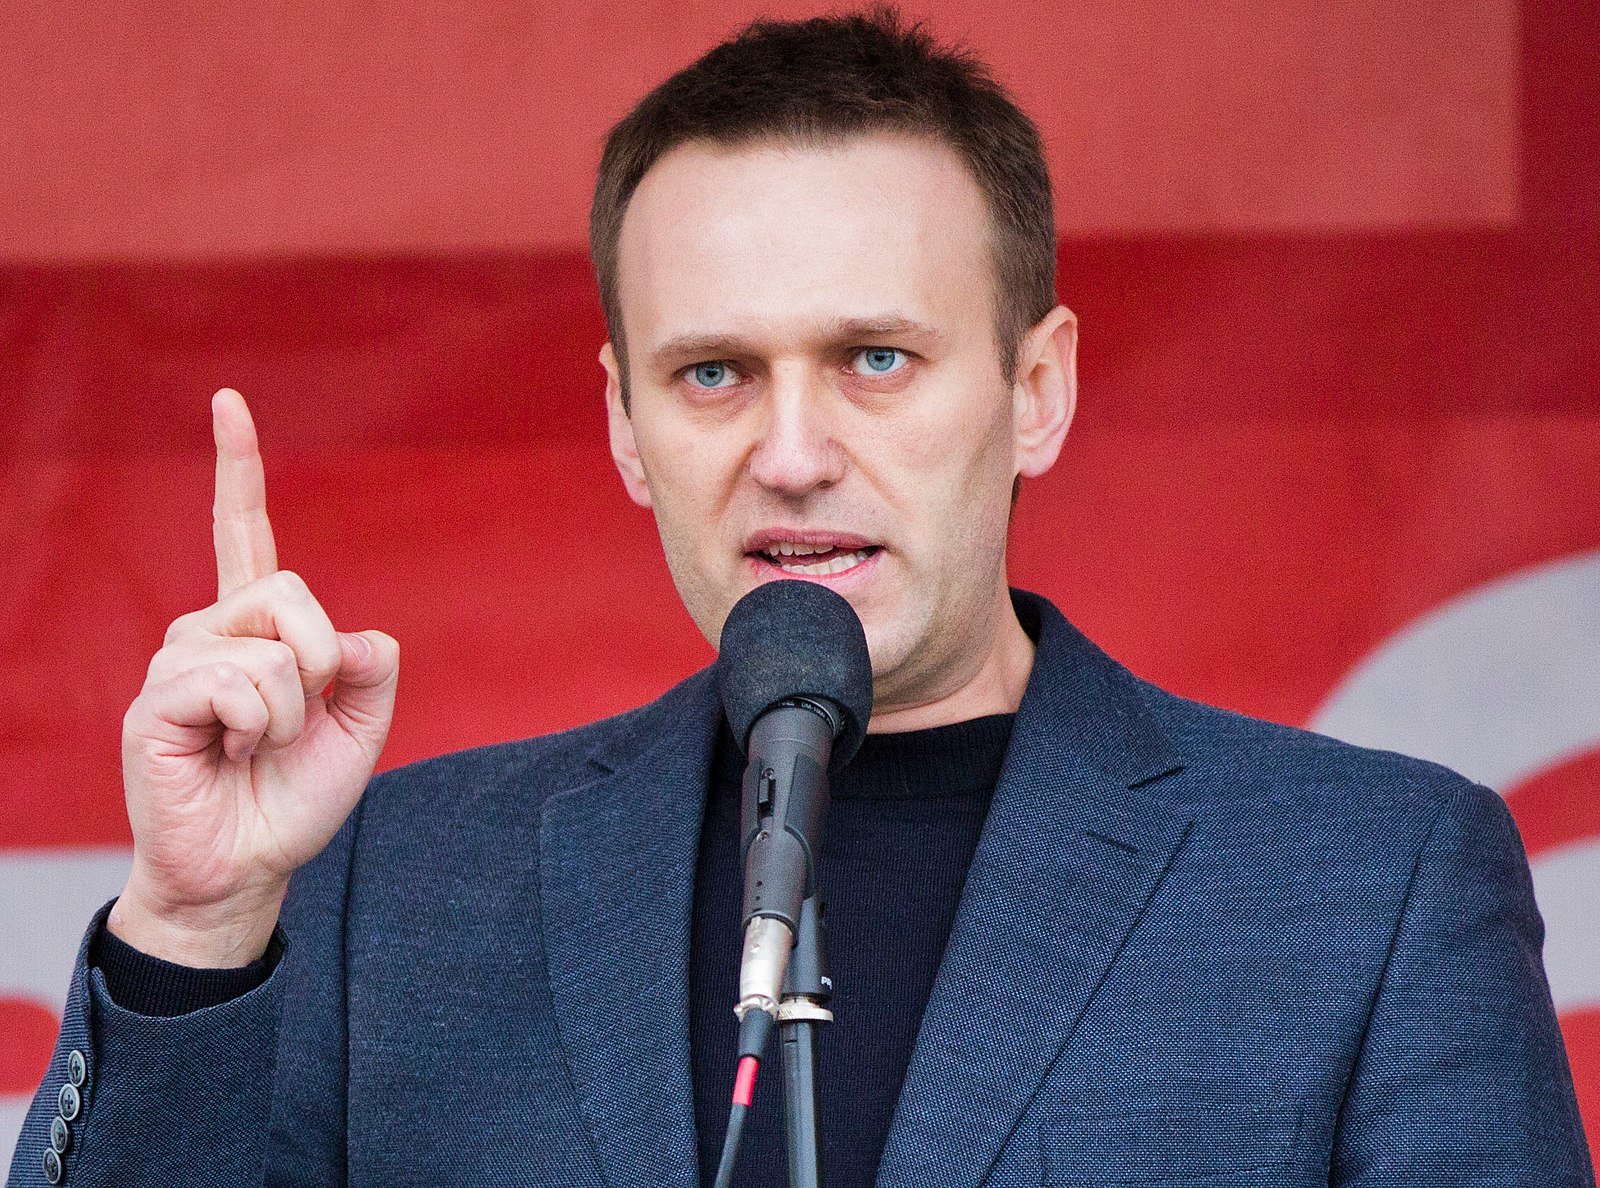 Russian opposition leader Alexei Navalny. Photo by Evgeny Feldman / Novaya Gazeta, via Wikipedia Commons.